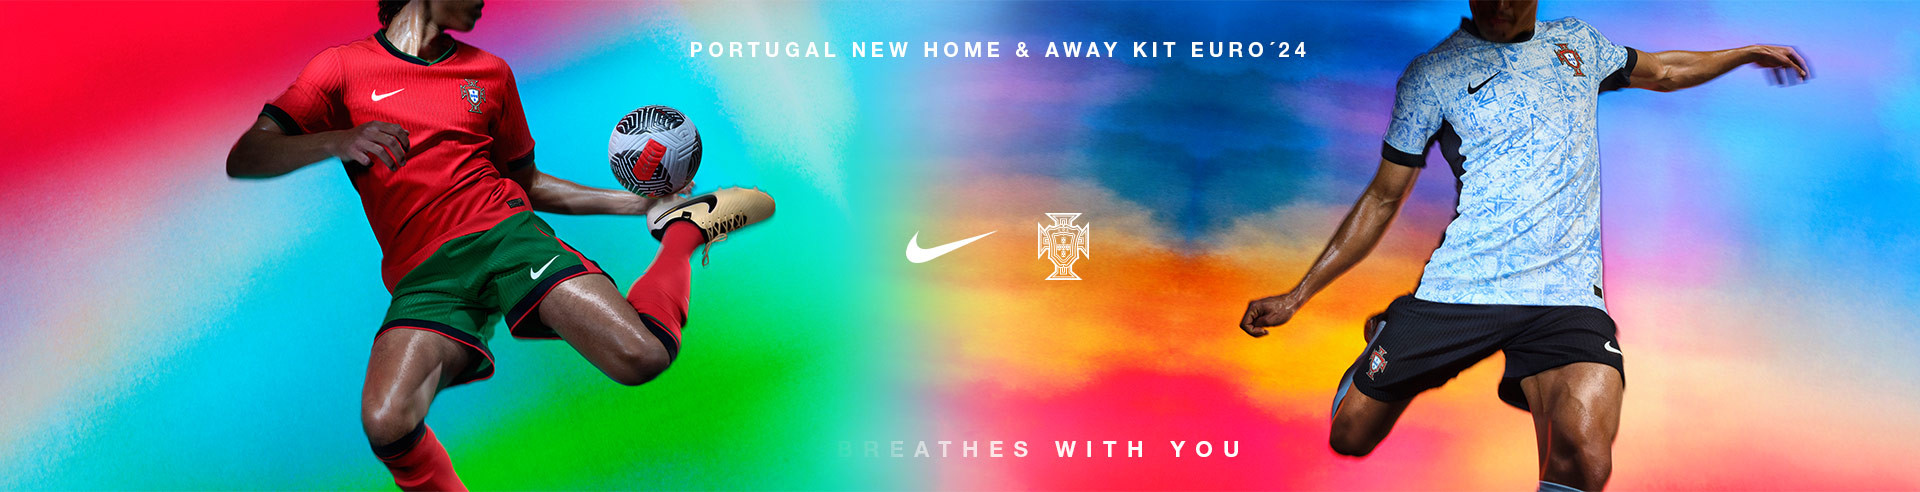 nike portugal euro 2024 new kits pt